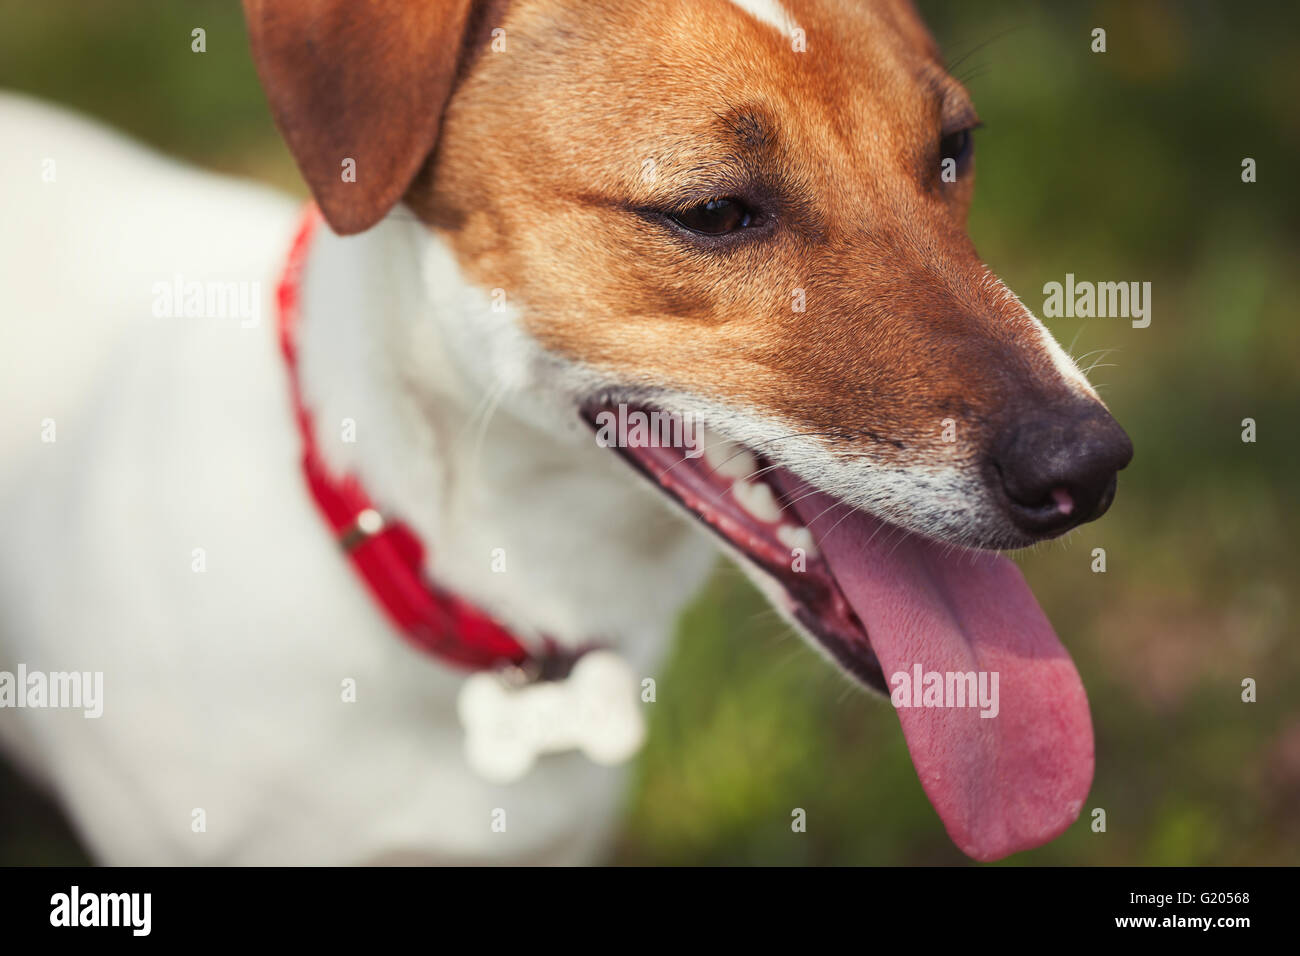 Jack Russell Welpen in grünen Park. Niedliche kleine Haushund, guter Freund für eine Familie und Kinder. Freundlich und verspielt Hunde Rasse Stockfoto